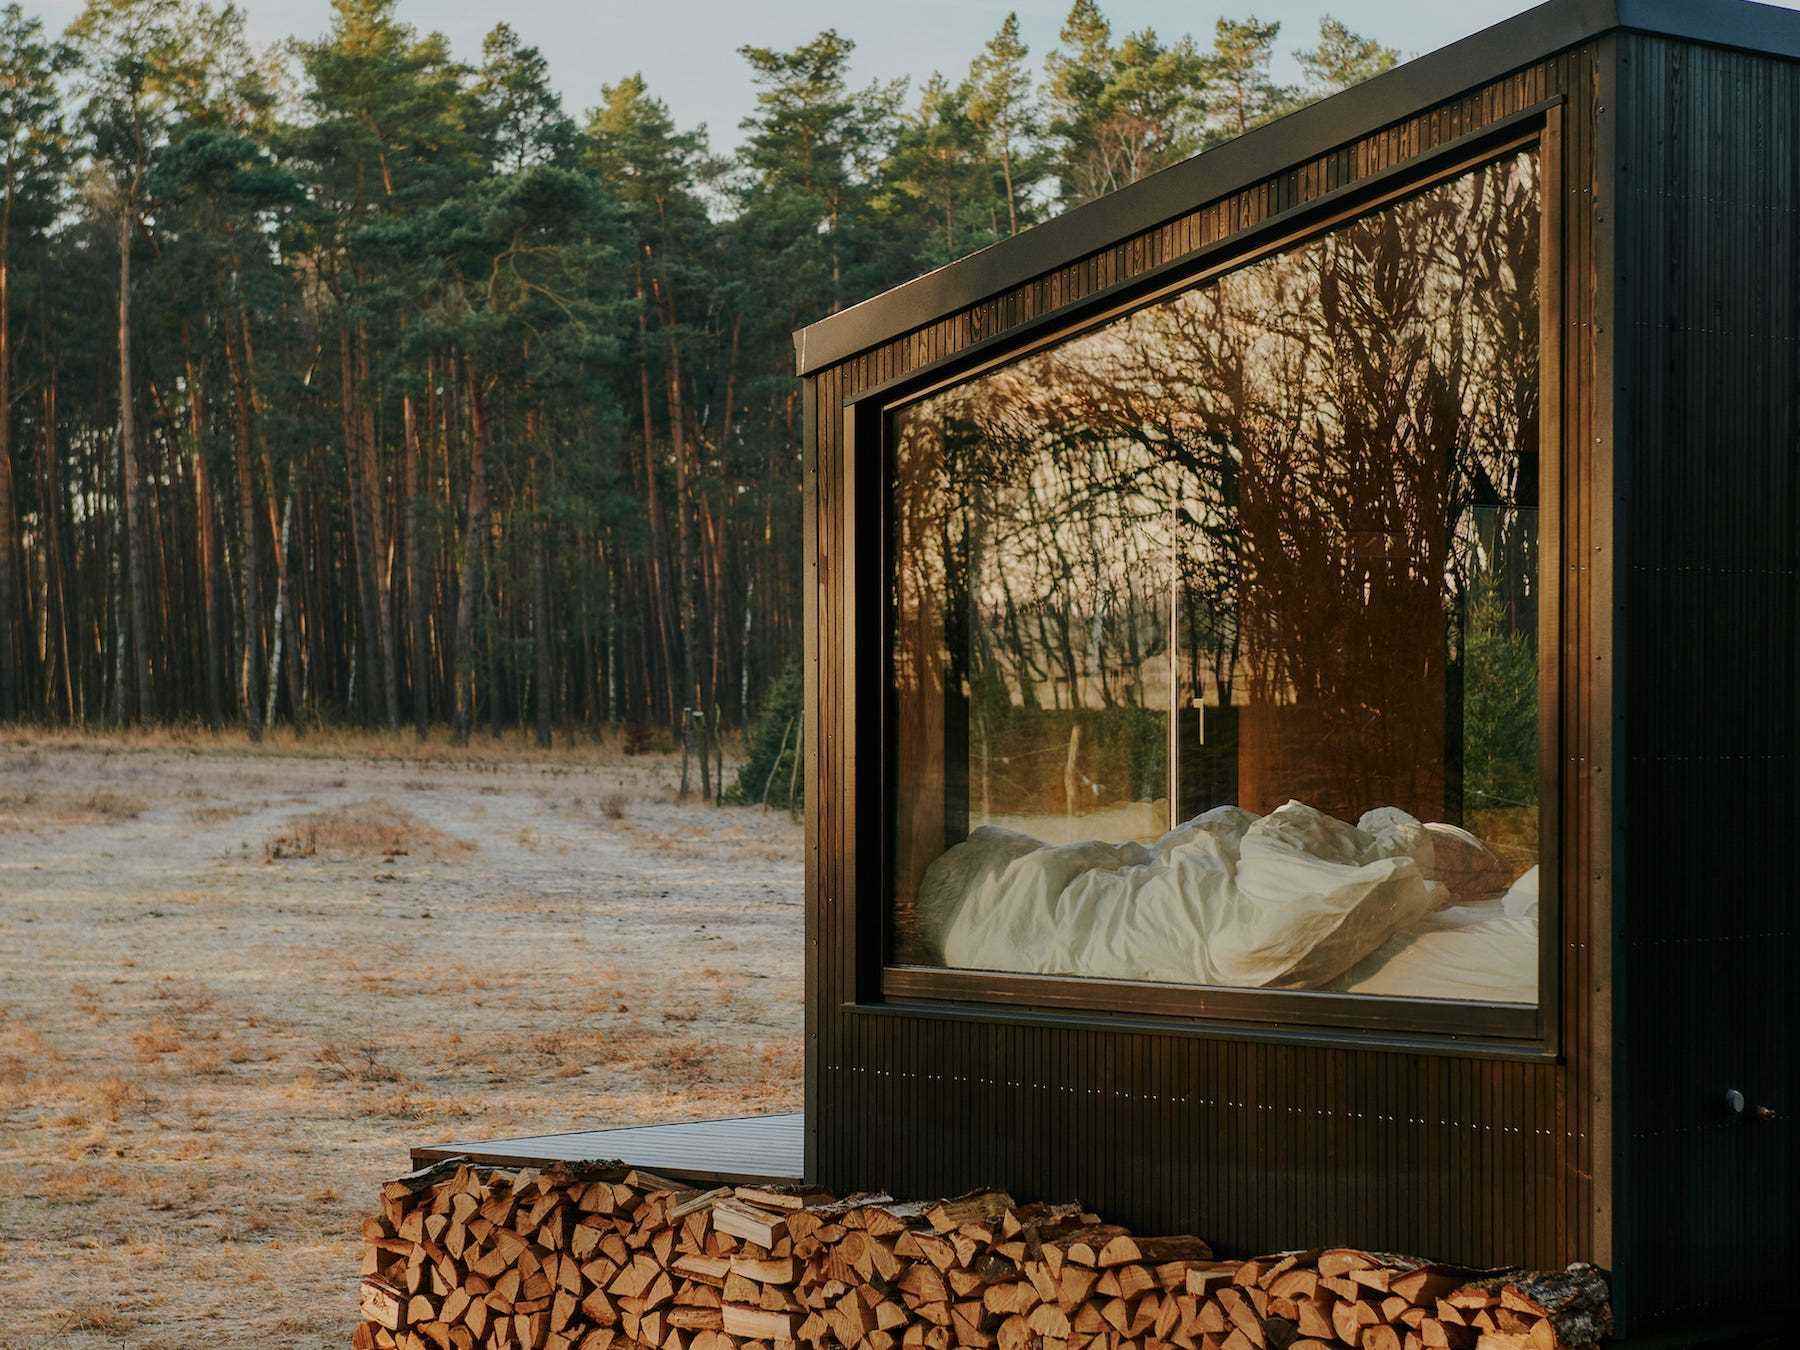 Eine Nahaufnahme einer Raus-Hütte in der Natur, umgeben von Bäumen und offenen Feldern.